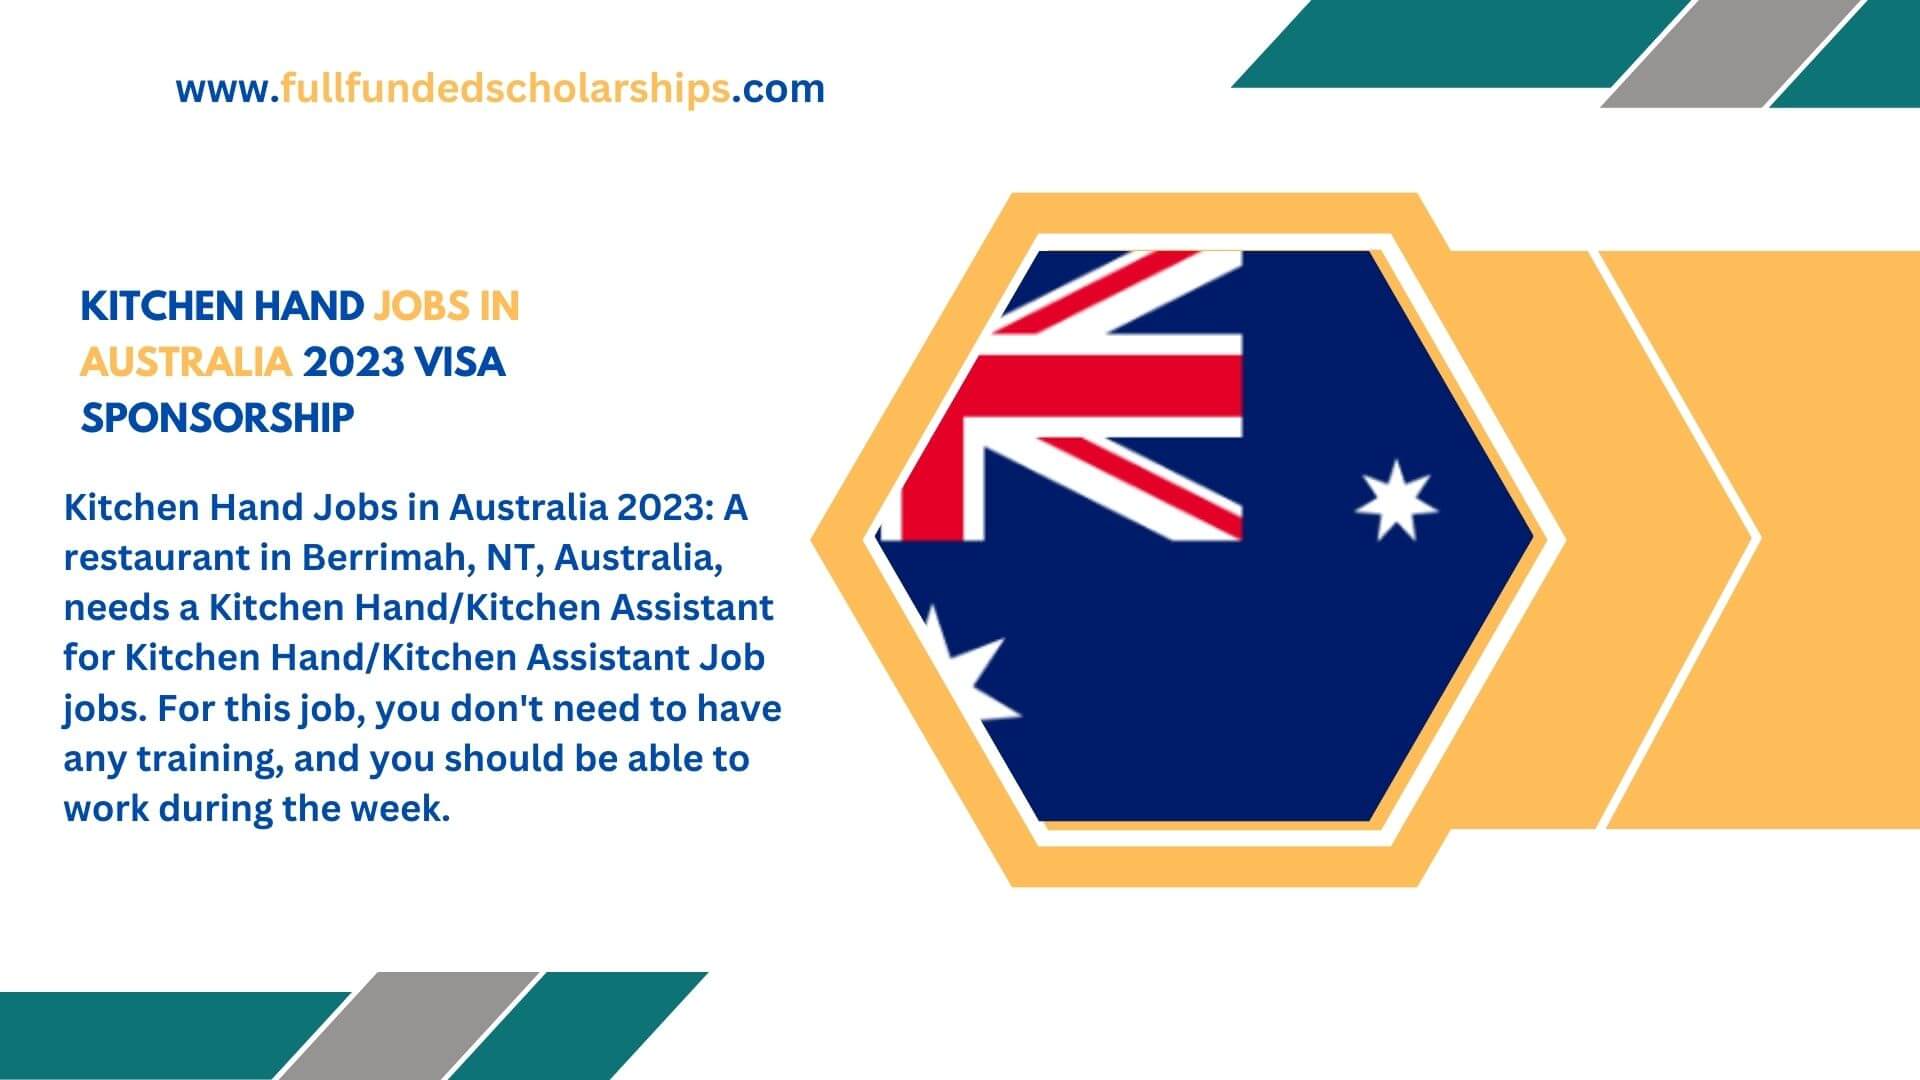 Kitchen Hand Jobs in Australia 2023 Visa Sponsorship